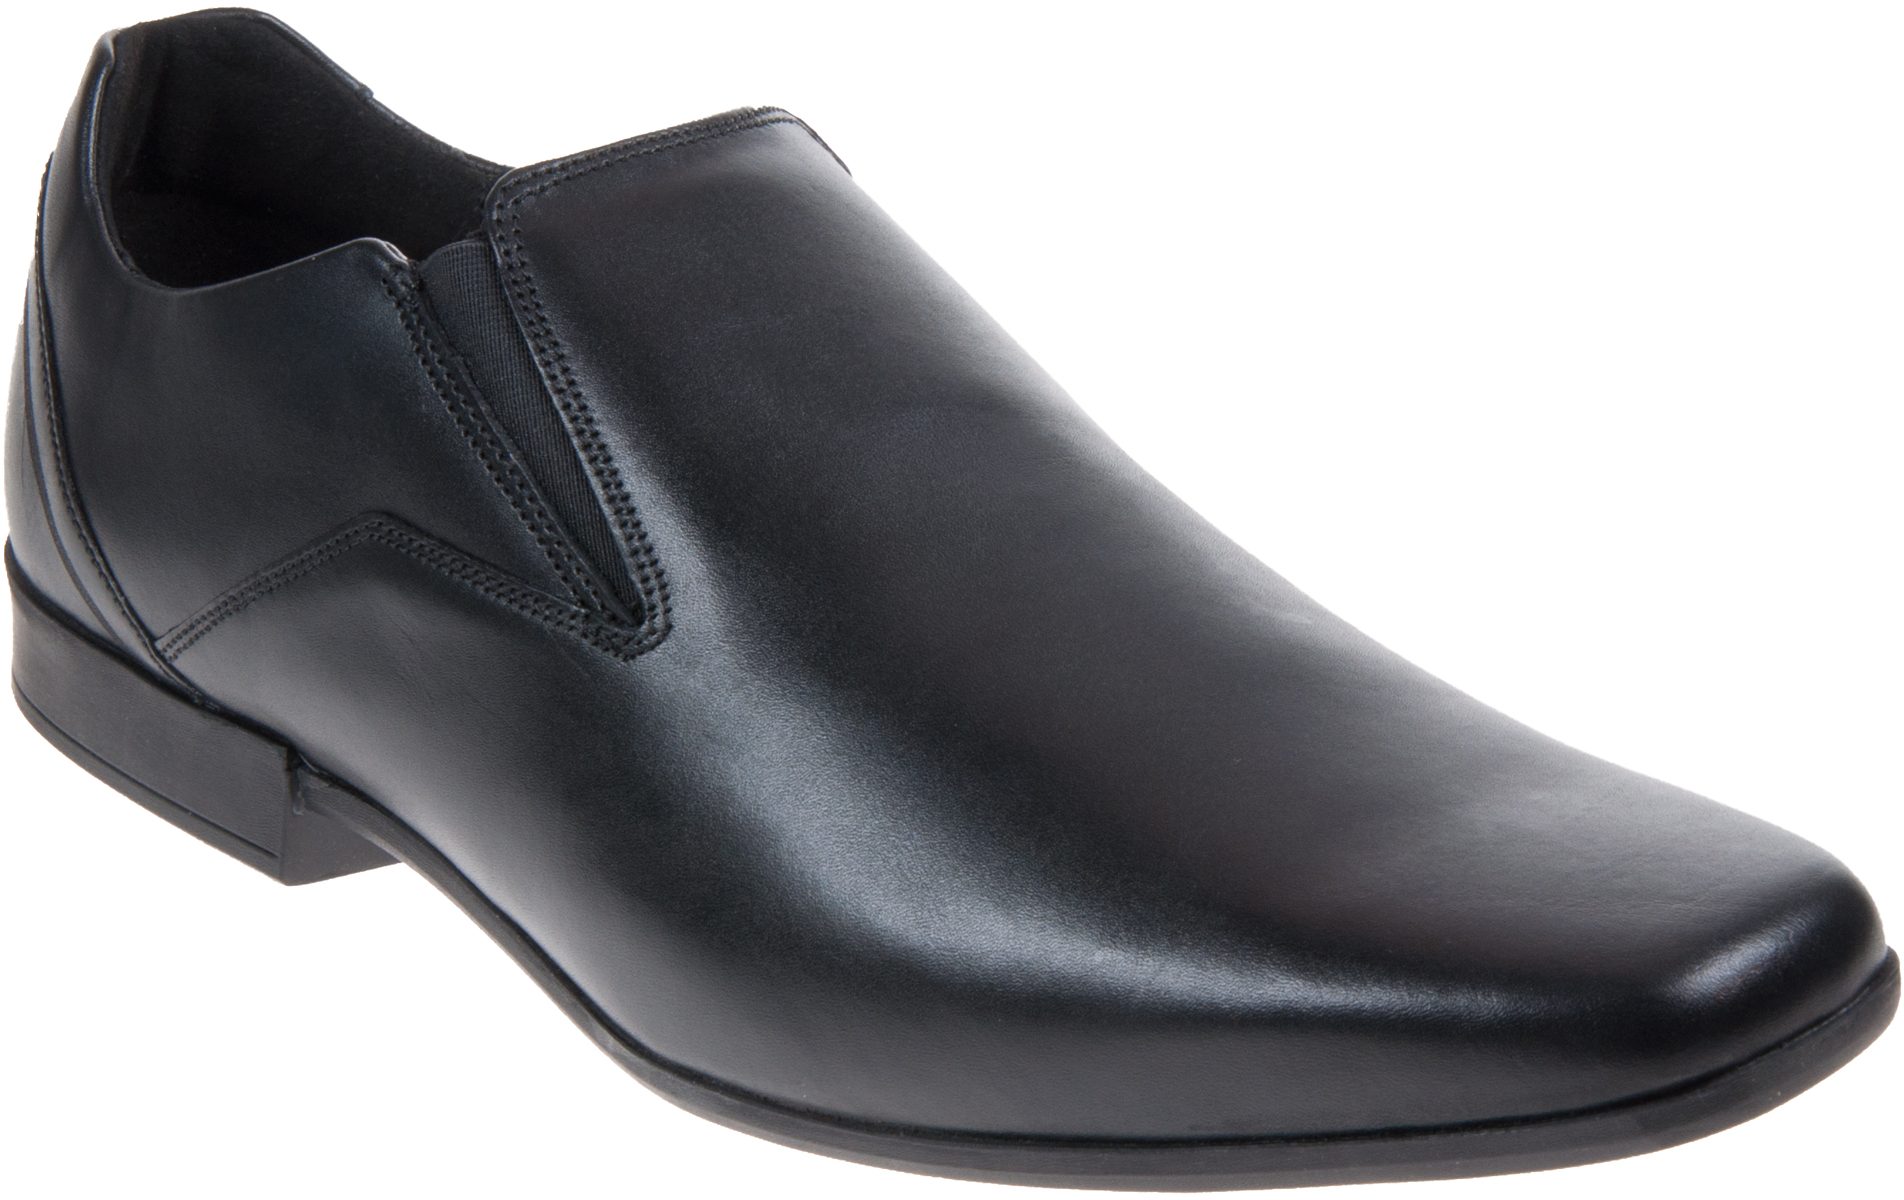 Clarks Slip Black 26127188 - Formal Shoes - Shoes